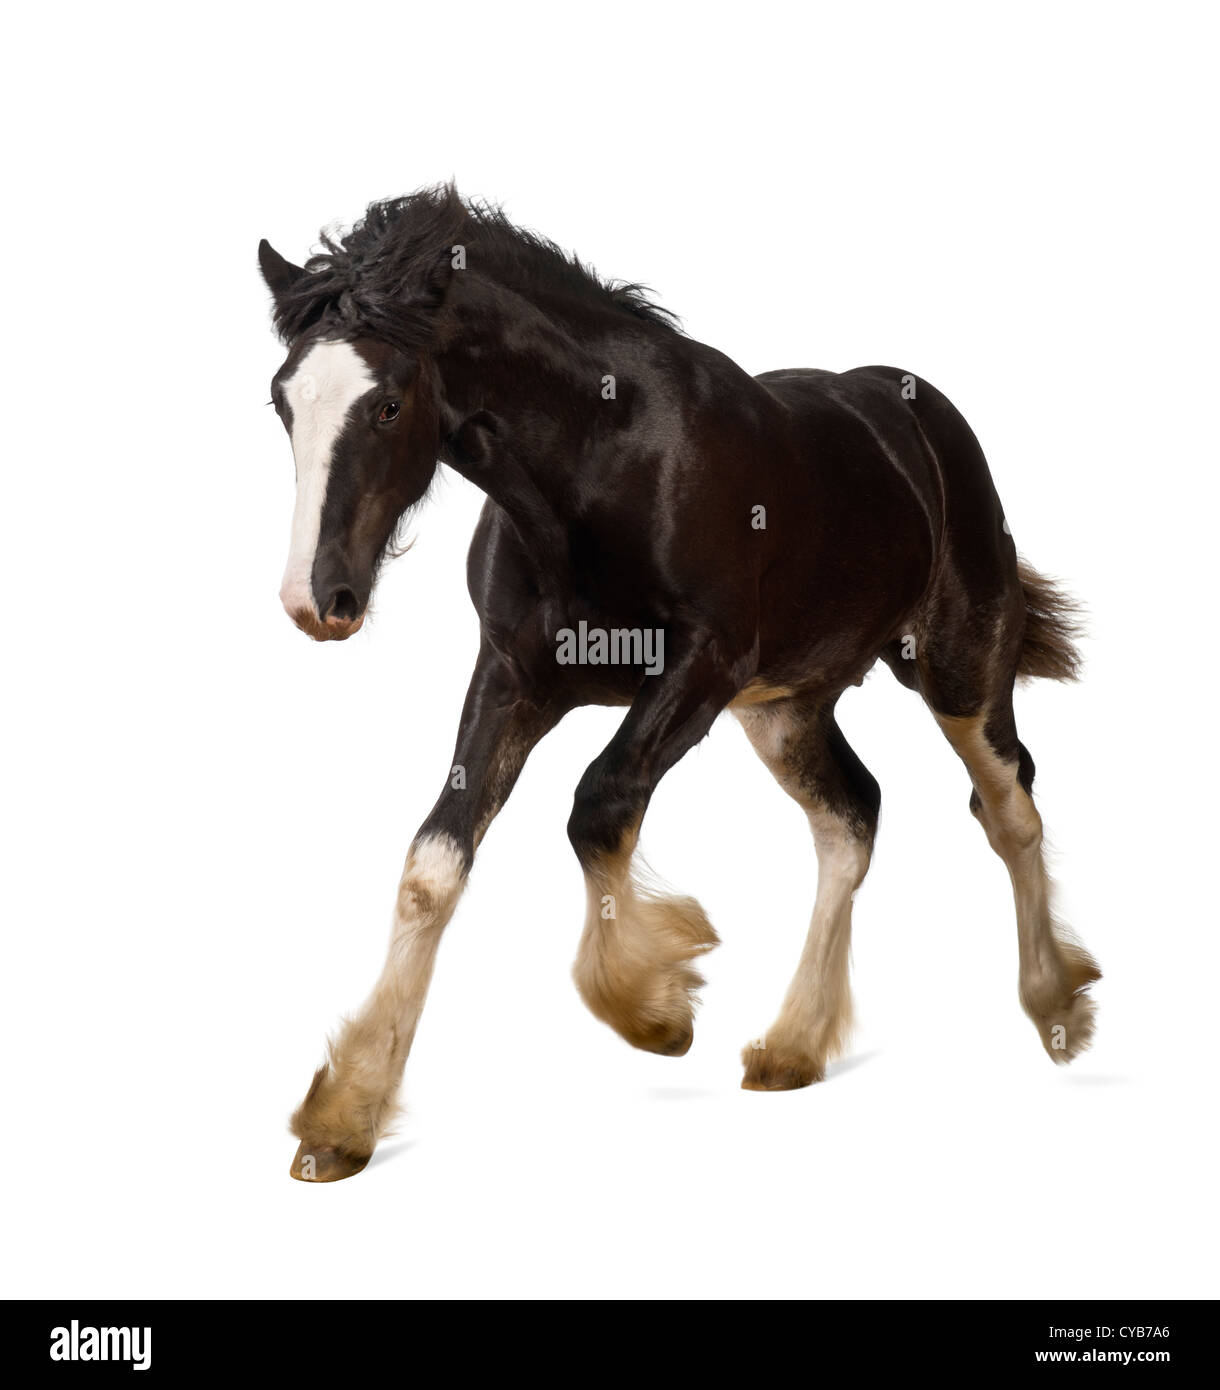 Shire cavallo galoppante puledro contro uno sfondo bianco Foto Stock